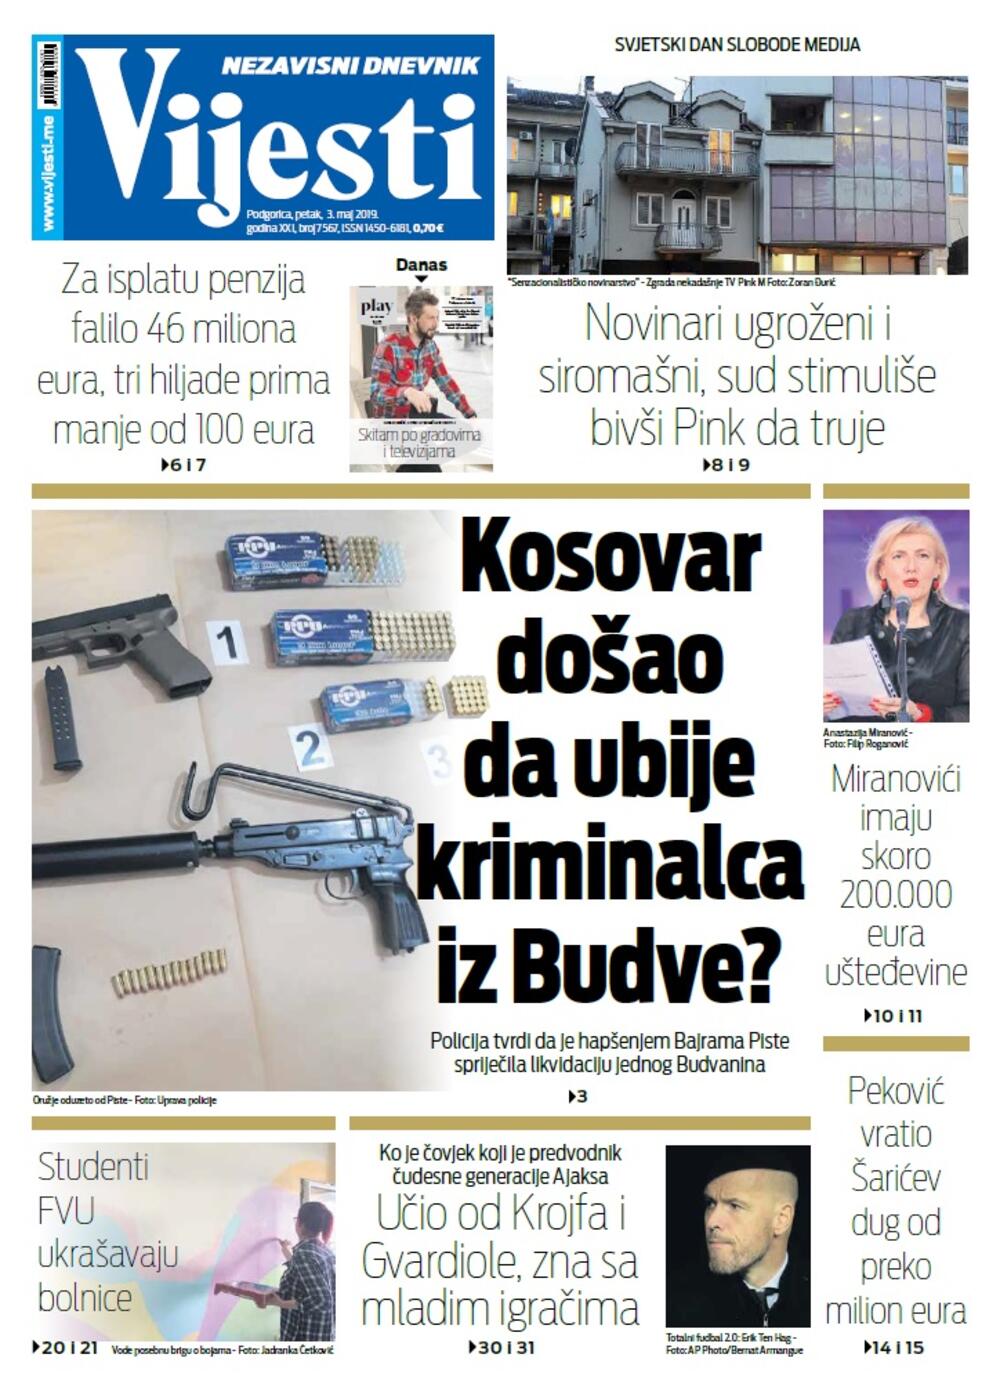 Naslovna strana "Vijesti" za 3. maj, Foto: Vijesti